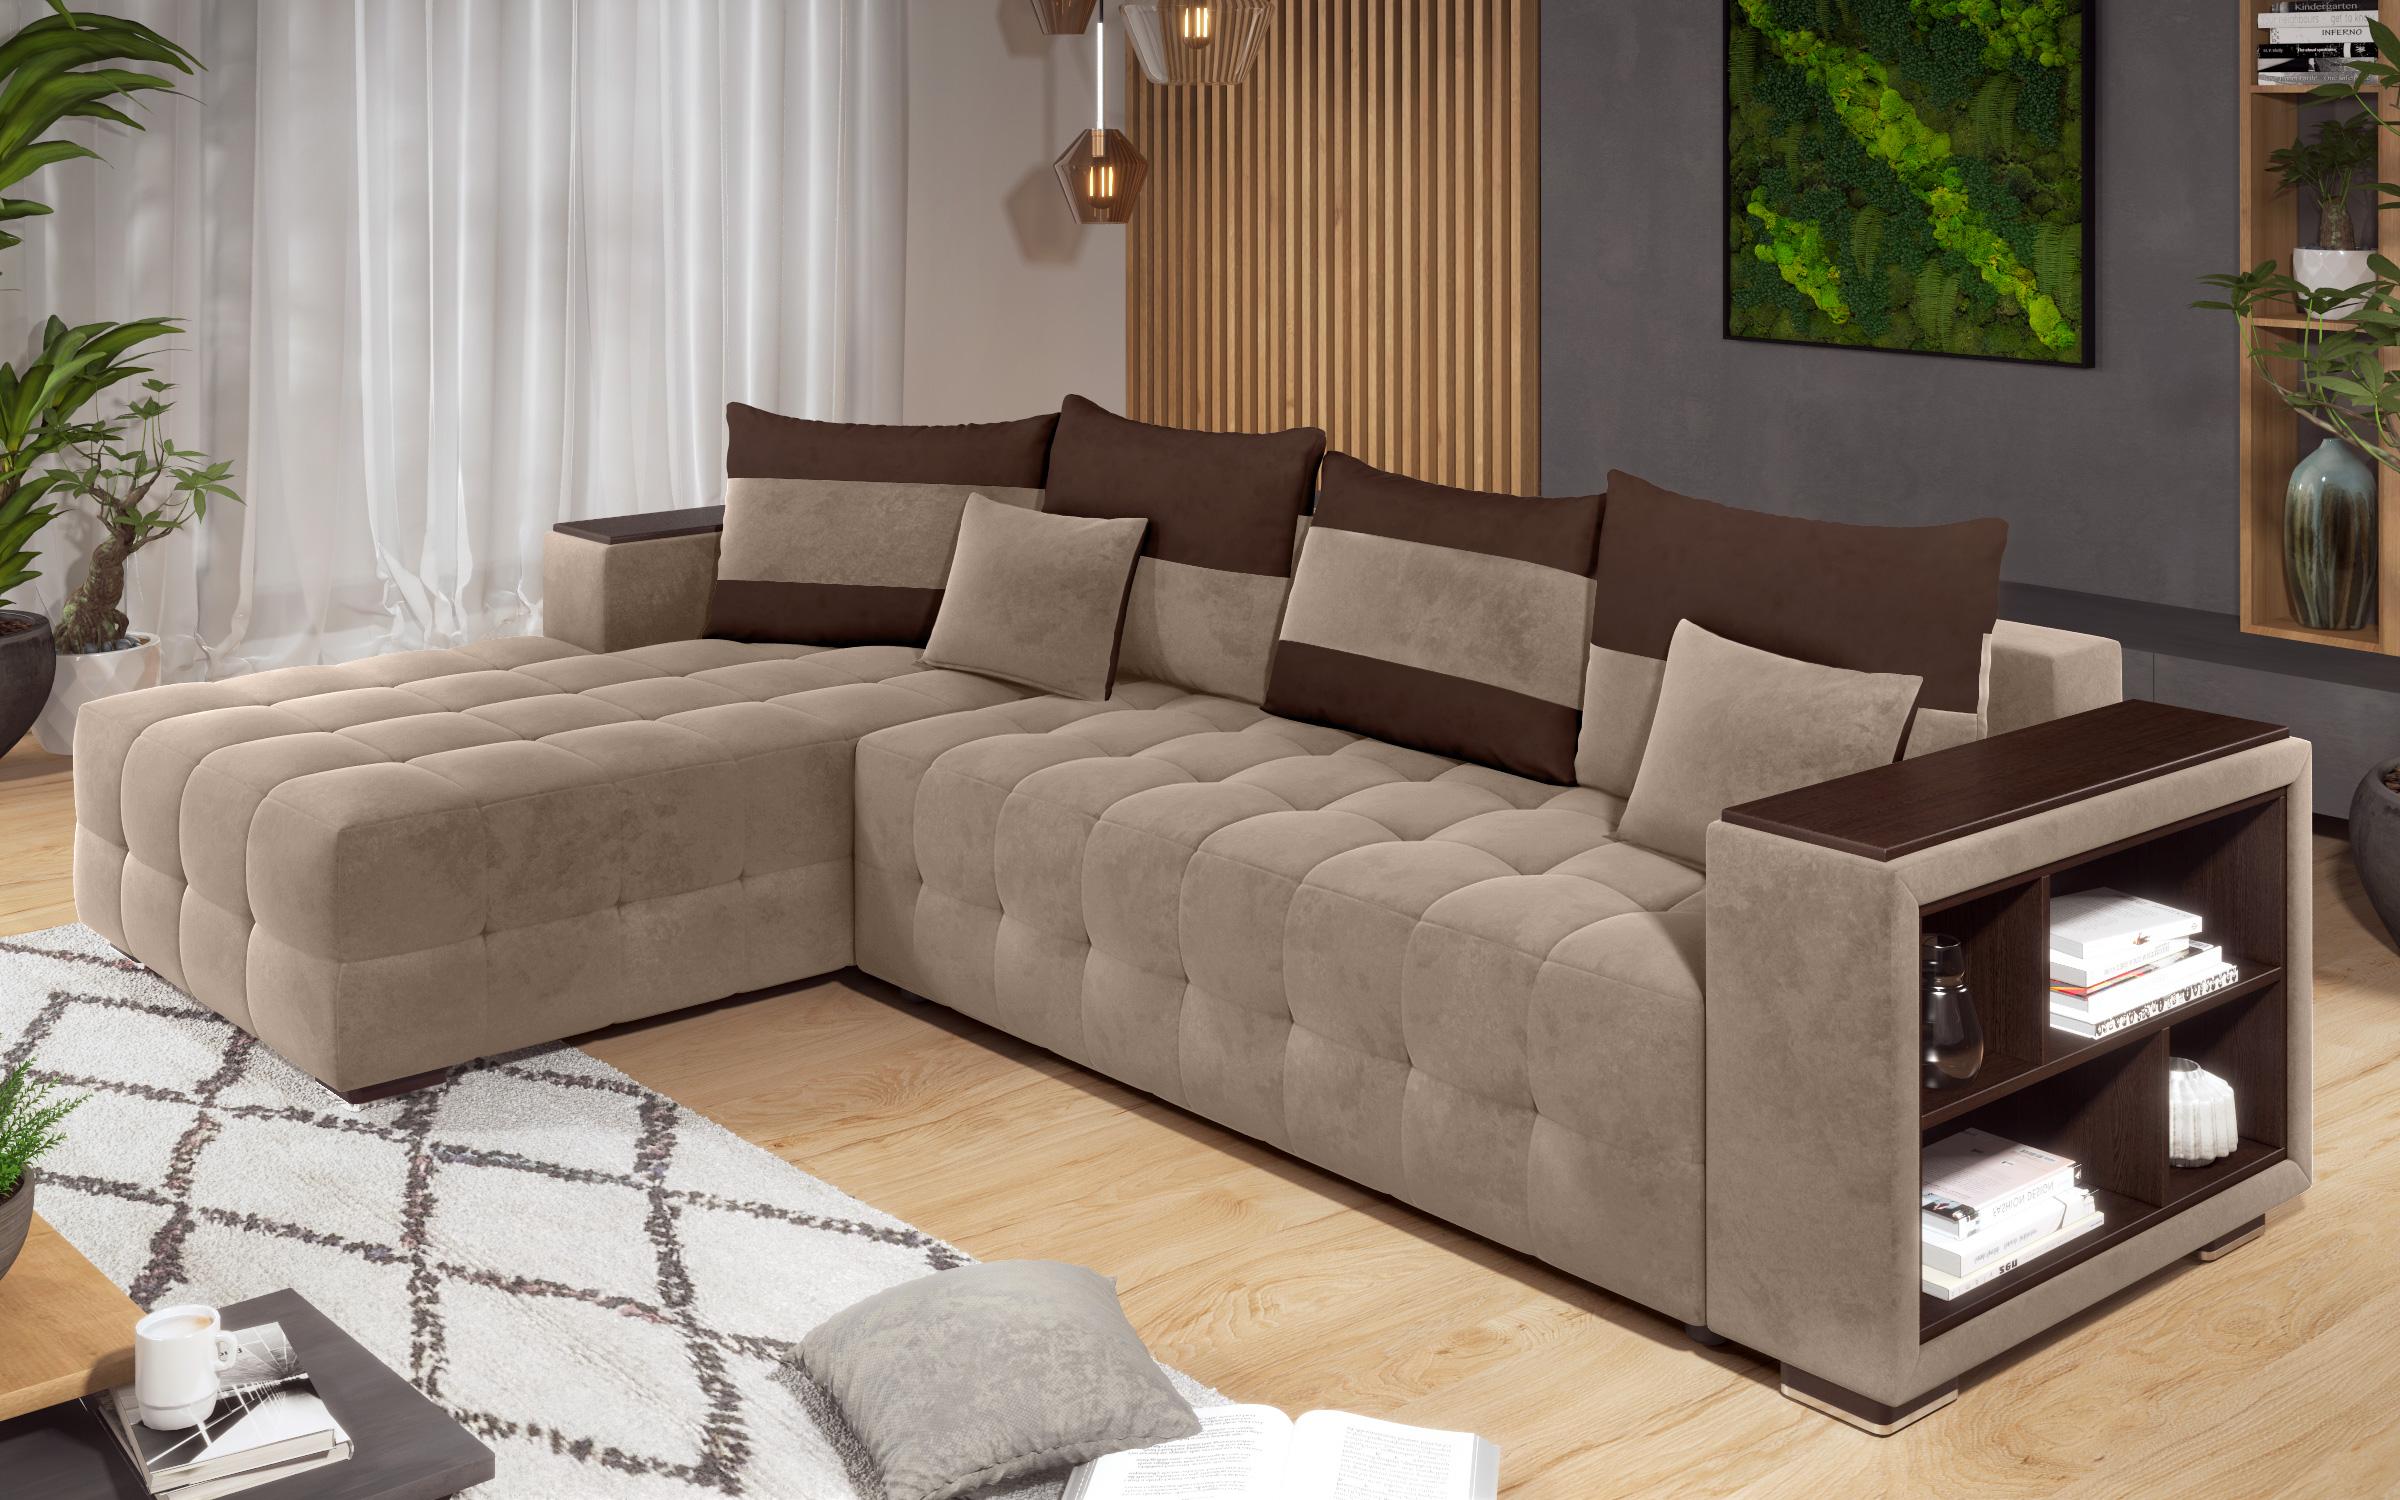 Γωνιακός καναπές - κρεβάτι με ανάκλιντρο και μπράτσο μίνι ραφιέρα Melvin, σκούρο μπεζ + σκούρο καφέ  4